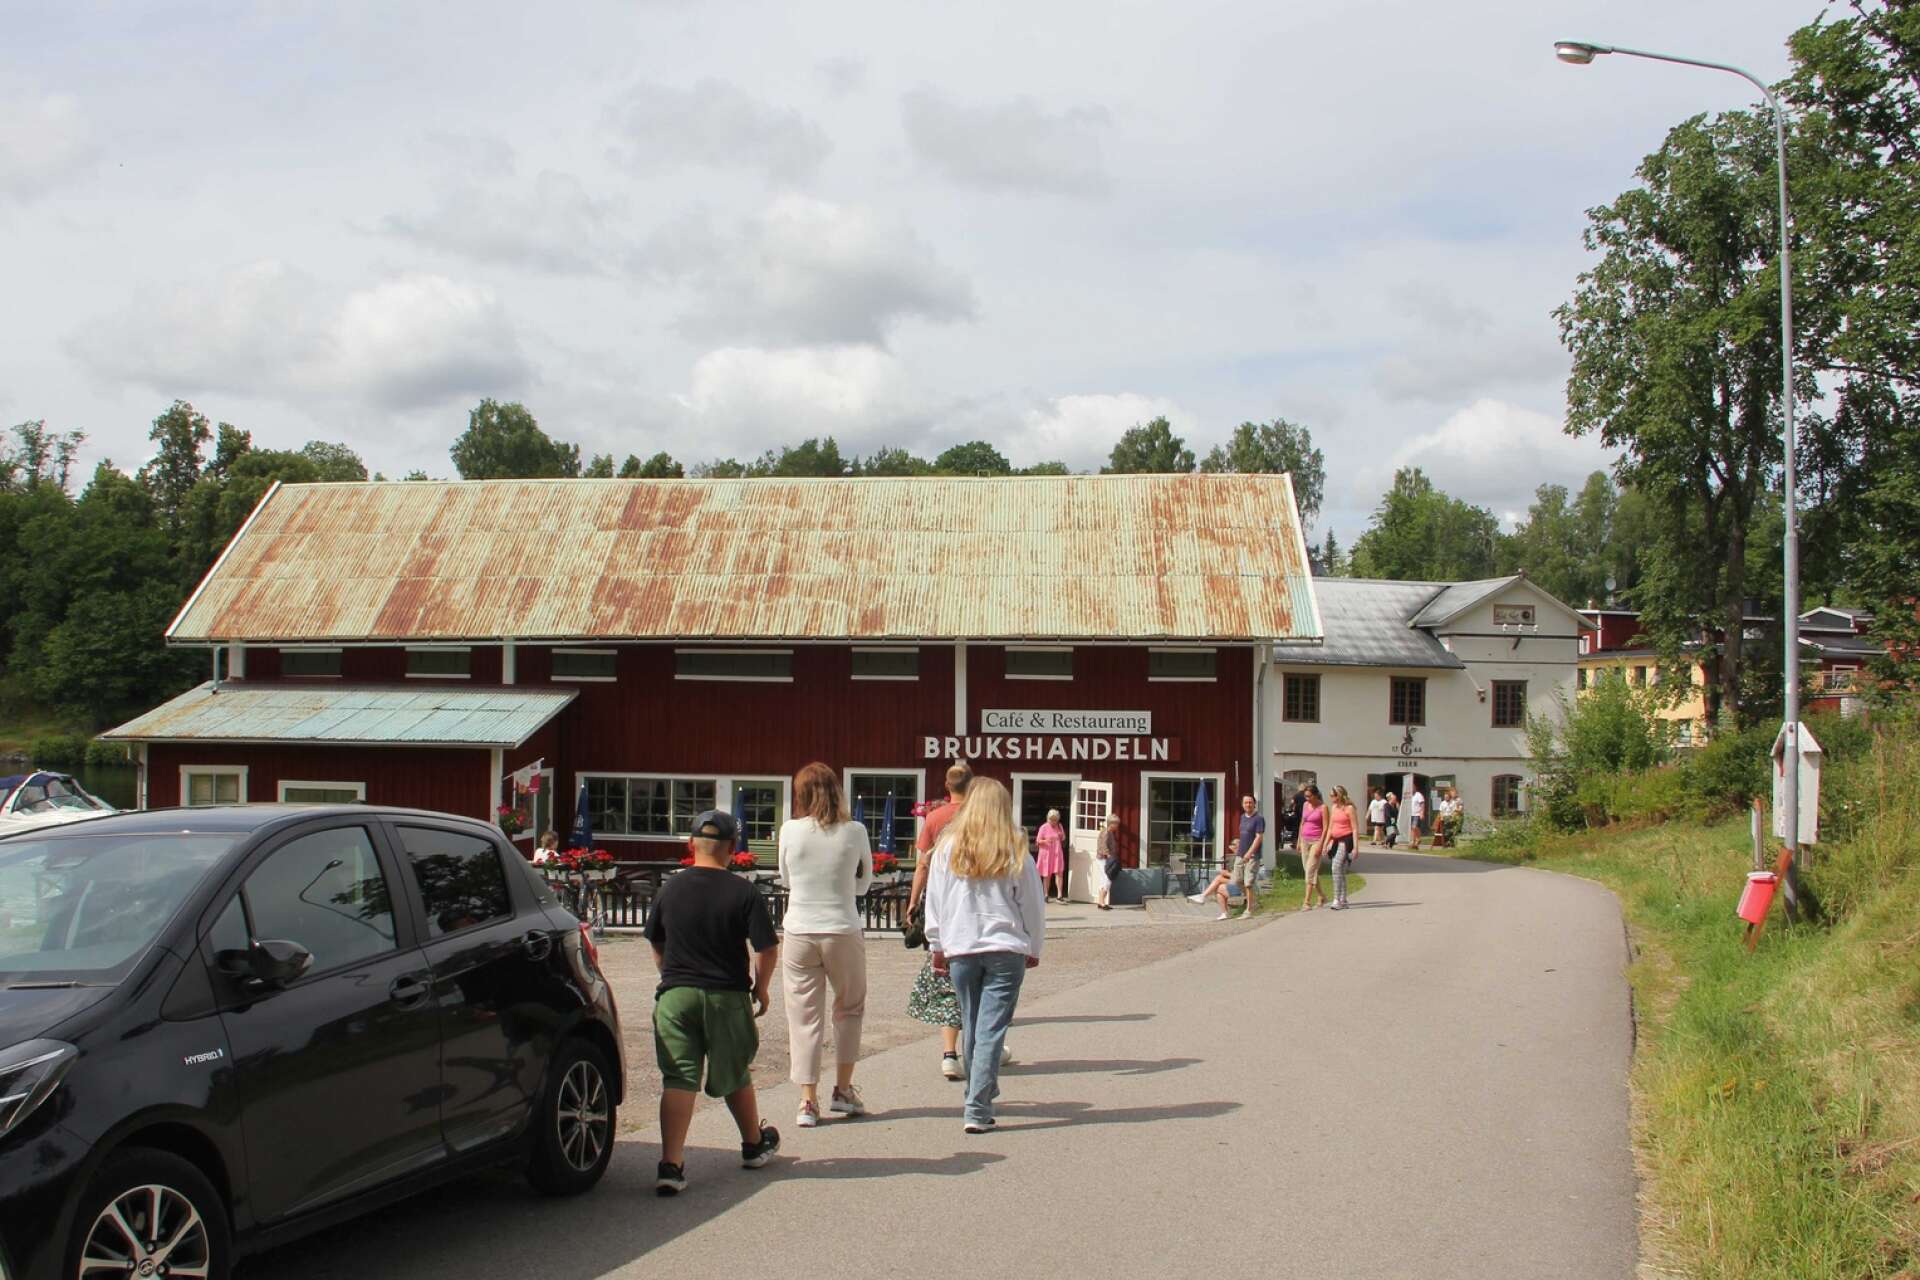 Café och restaurang brukshandeln ligger mitt i turiststråket vid Dalslands kanal.